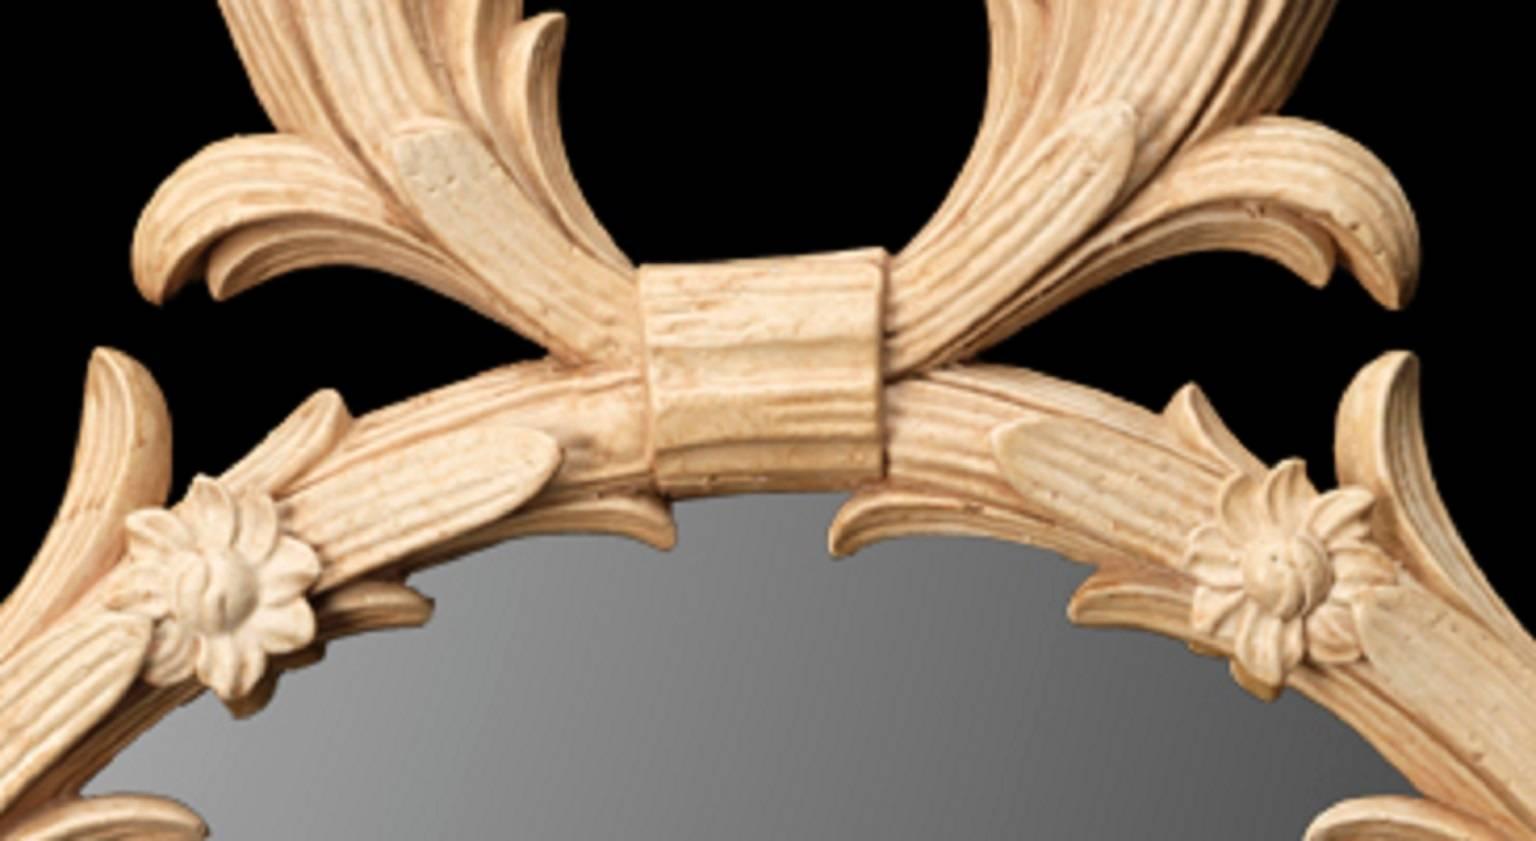 Ein geschnitzter Spiegel aus vergoldetem Holz nach Entwürfen von John Linnell. Der Rahmen besteht aus zwei gekreuzten Palmenzweigen mit Bändern, die von geschnitzten Blütenköpfen unterbrochen werden. Von Jonathan Sainsbury UK Ltd.

Geeignet für das